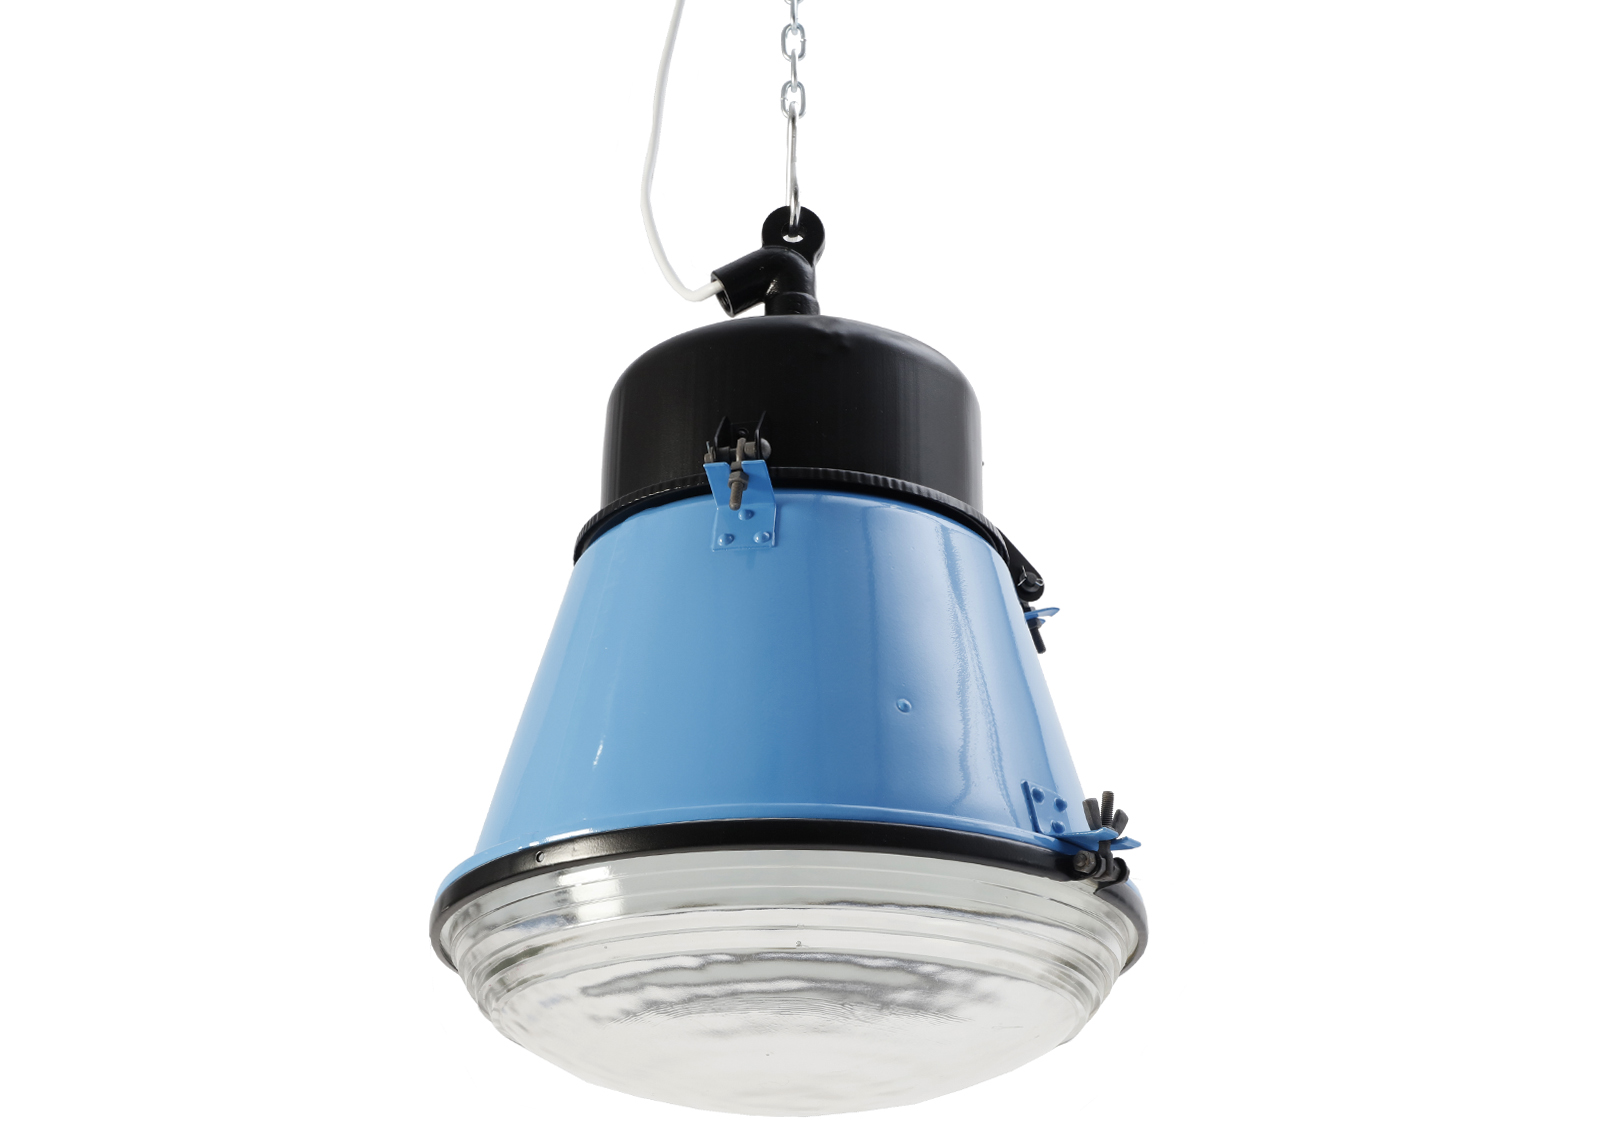 Lampa przemysłowa PRL ORP-125 PRL Black/White/Blue